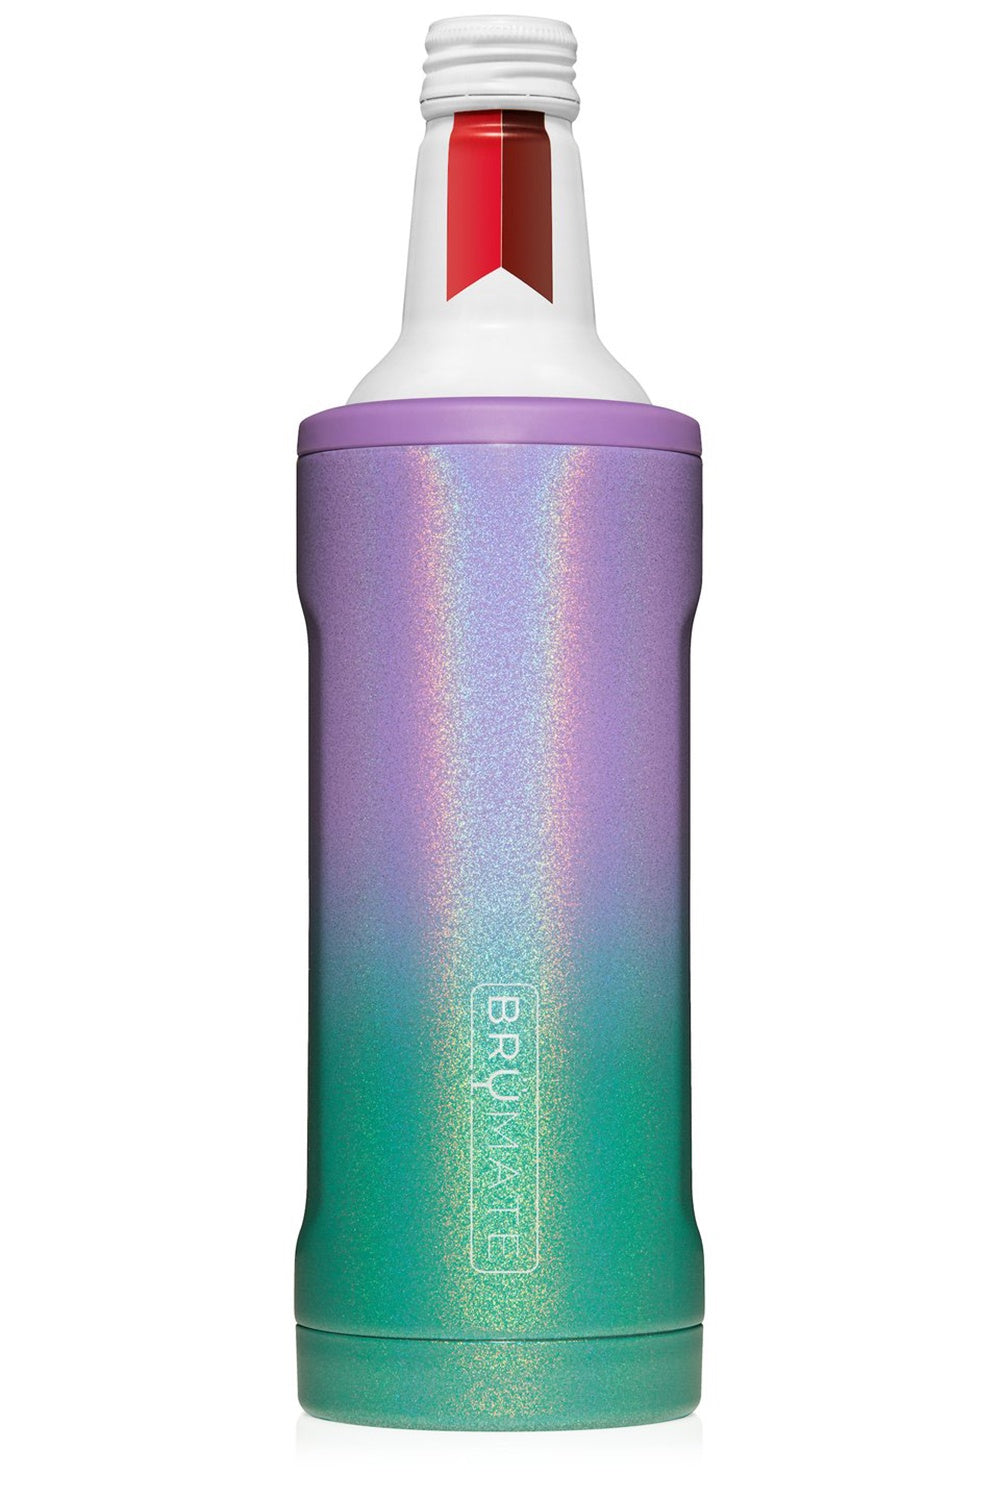 BruMate Hopsulator Bott'l Bottle Cooler - Glitter Mermaid